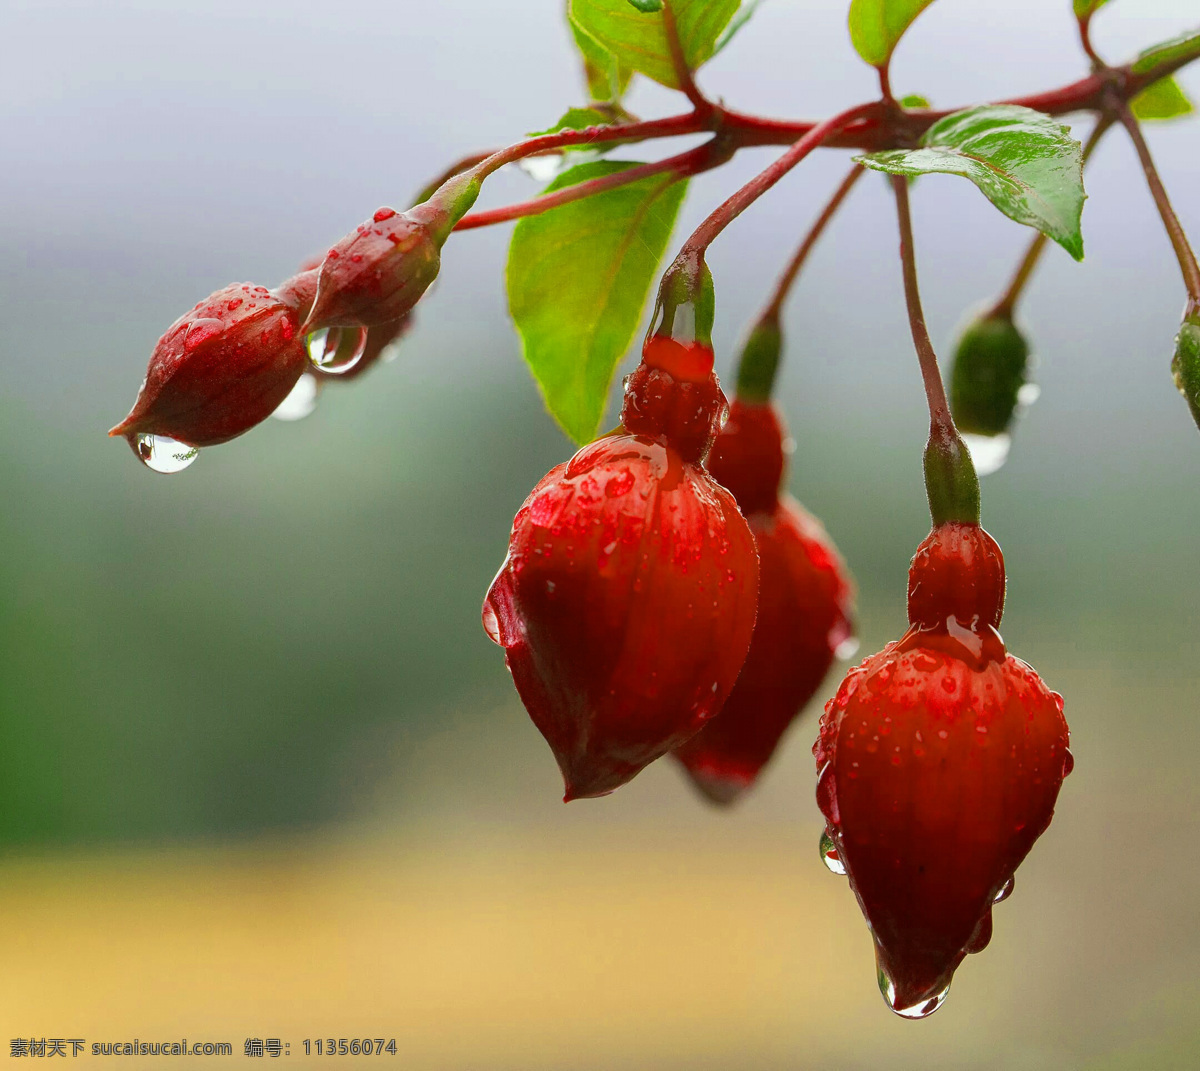 雨中花朵 水滴掉落 雨滴 花朵 水滴 掉落 特写 自然景观 自然风景